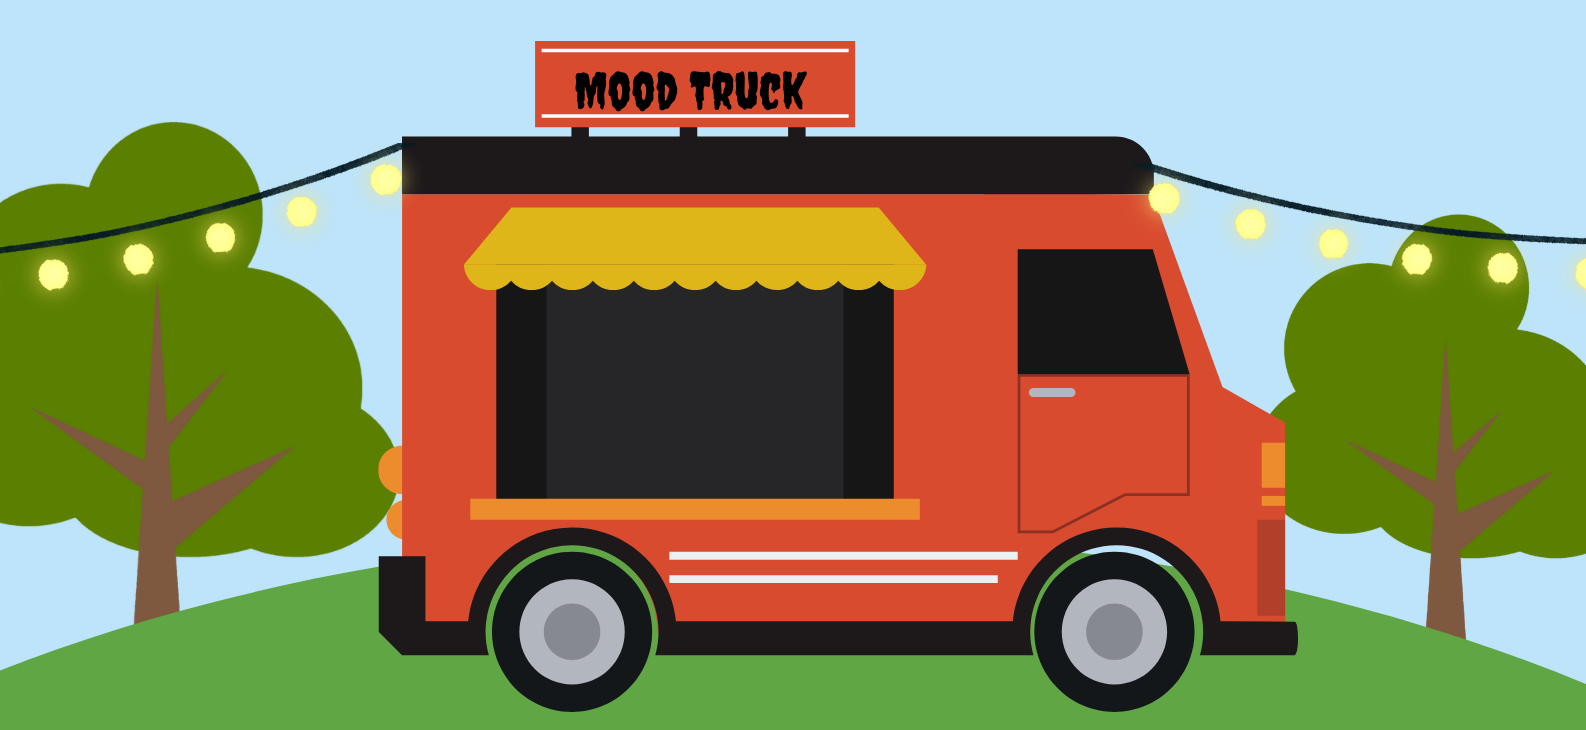 7 & 8 mai : Mood Truck Festival